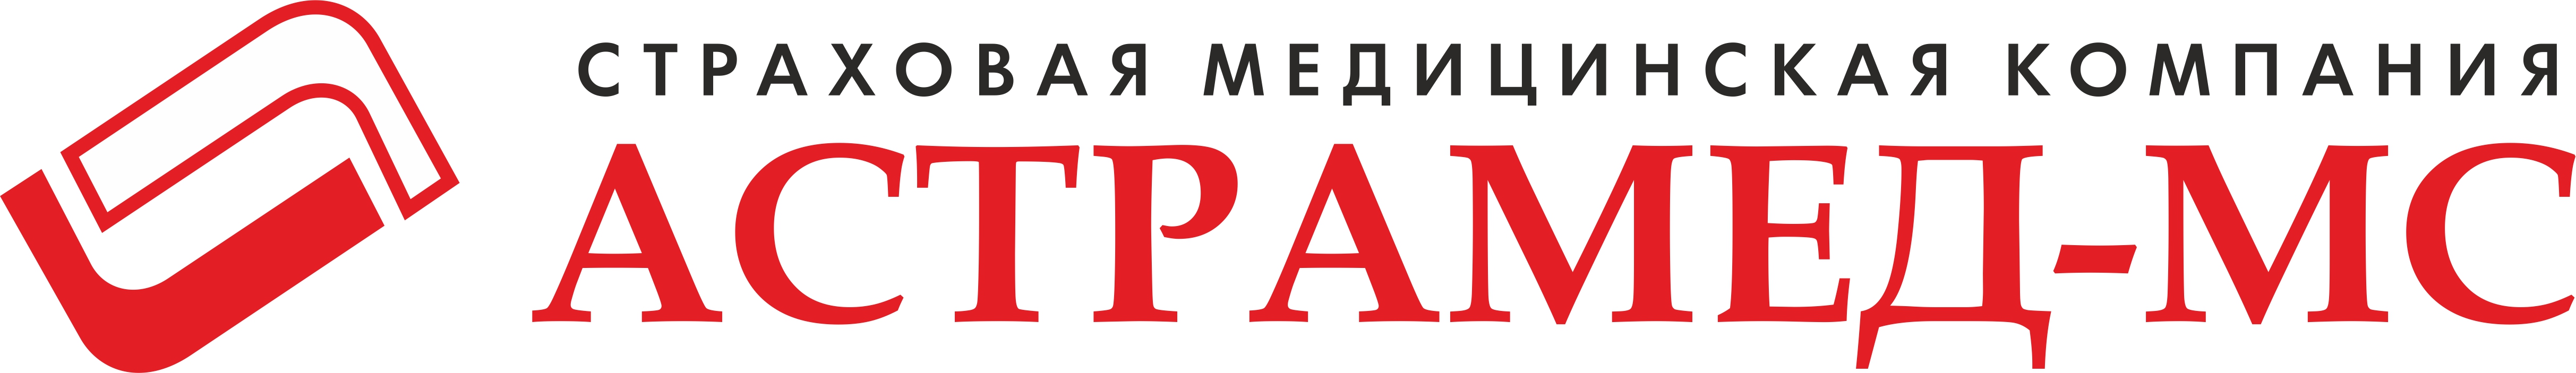 Логотип Астрамед